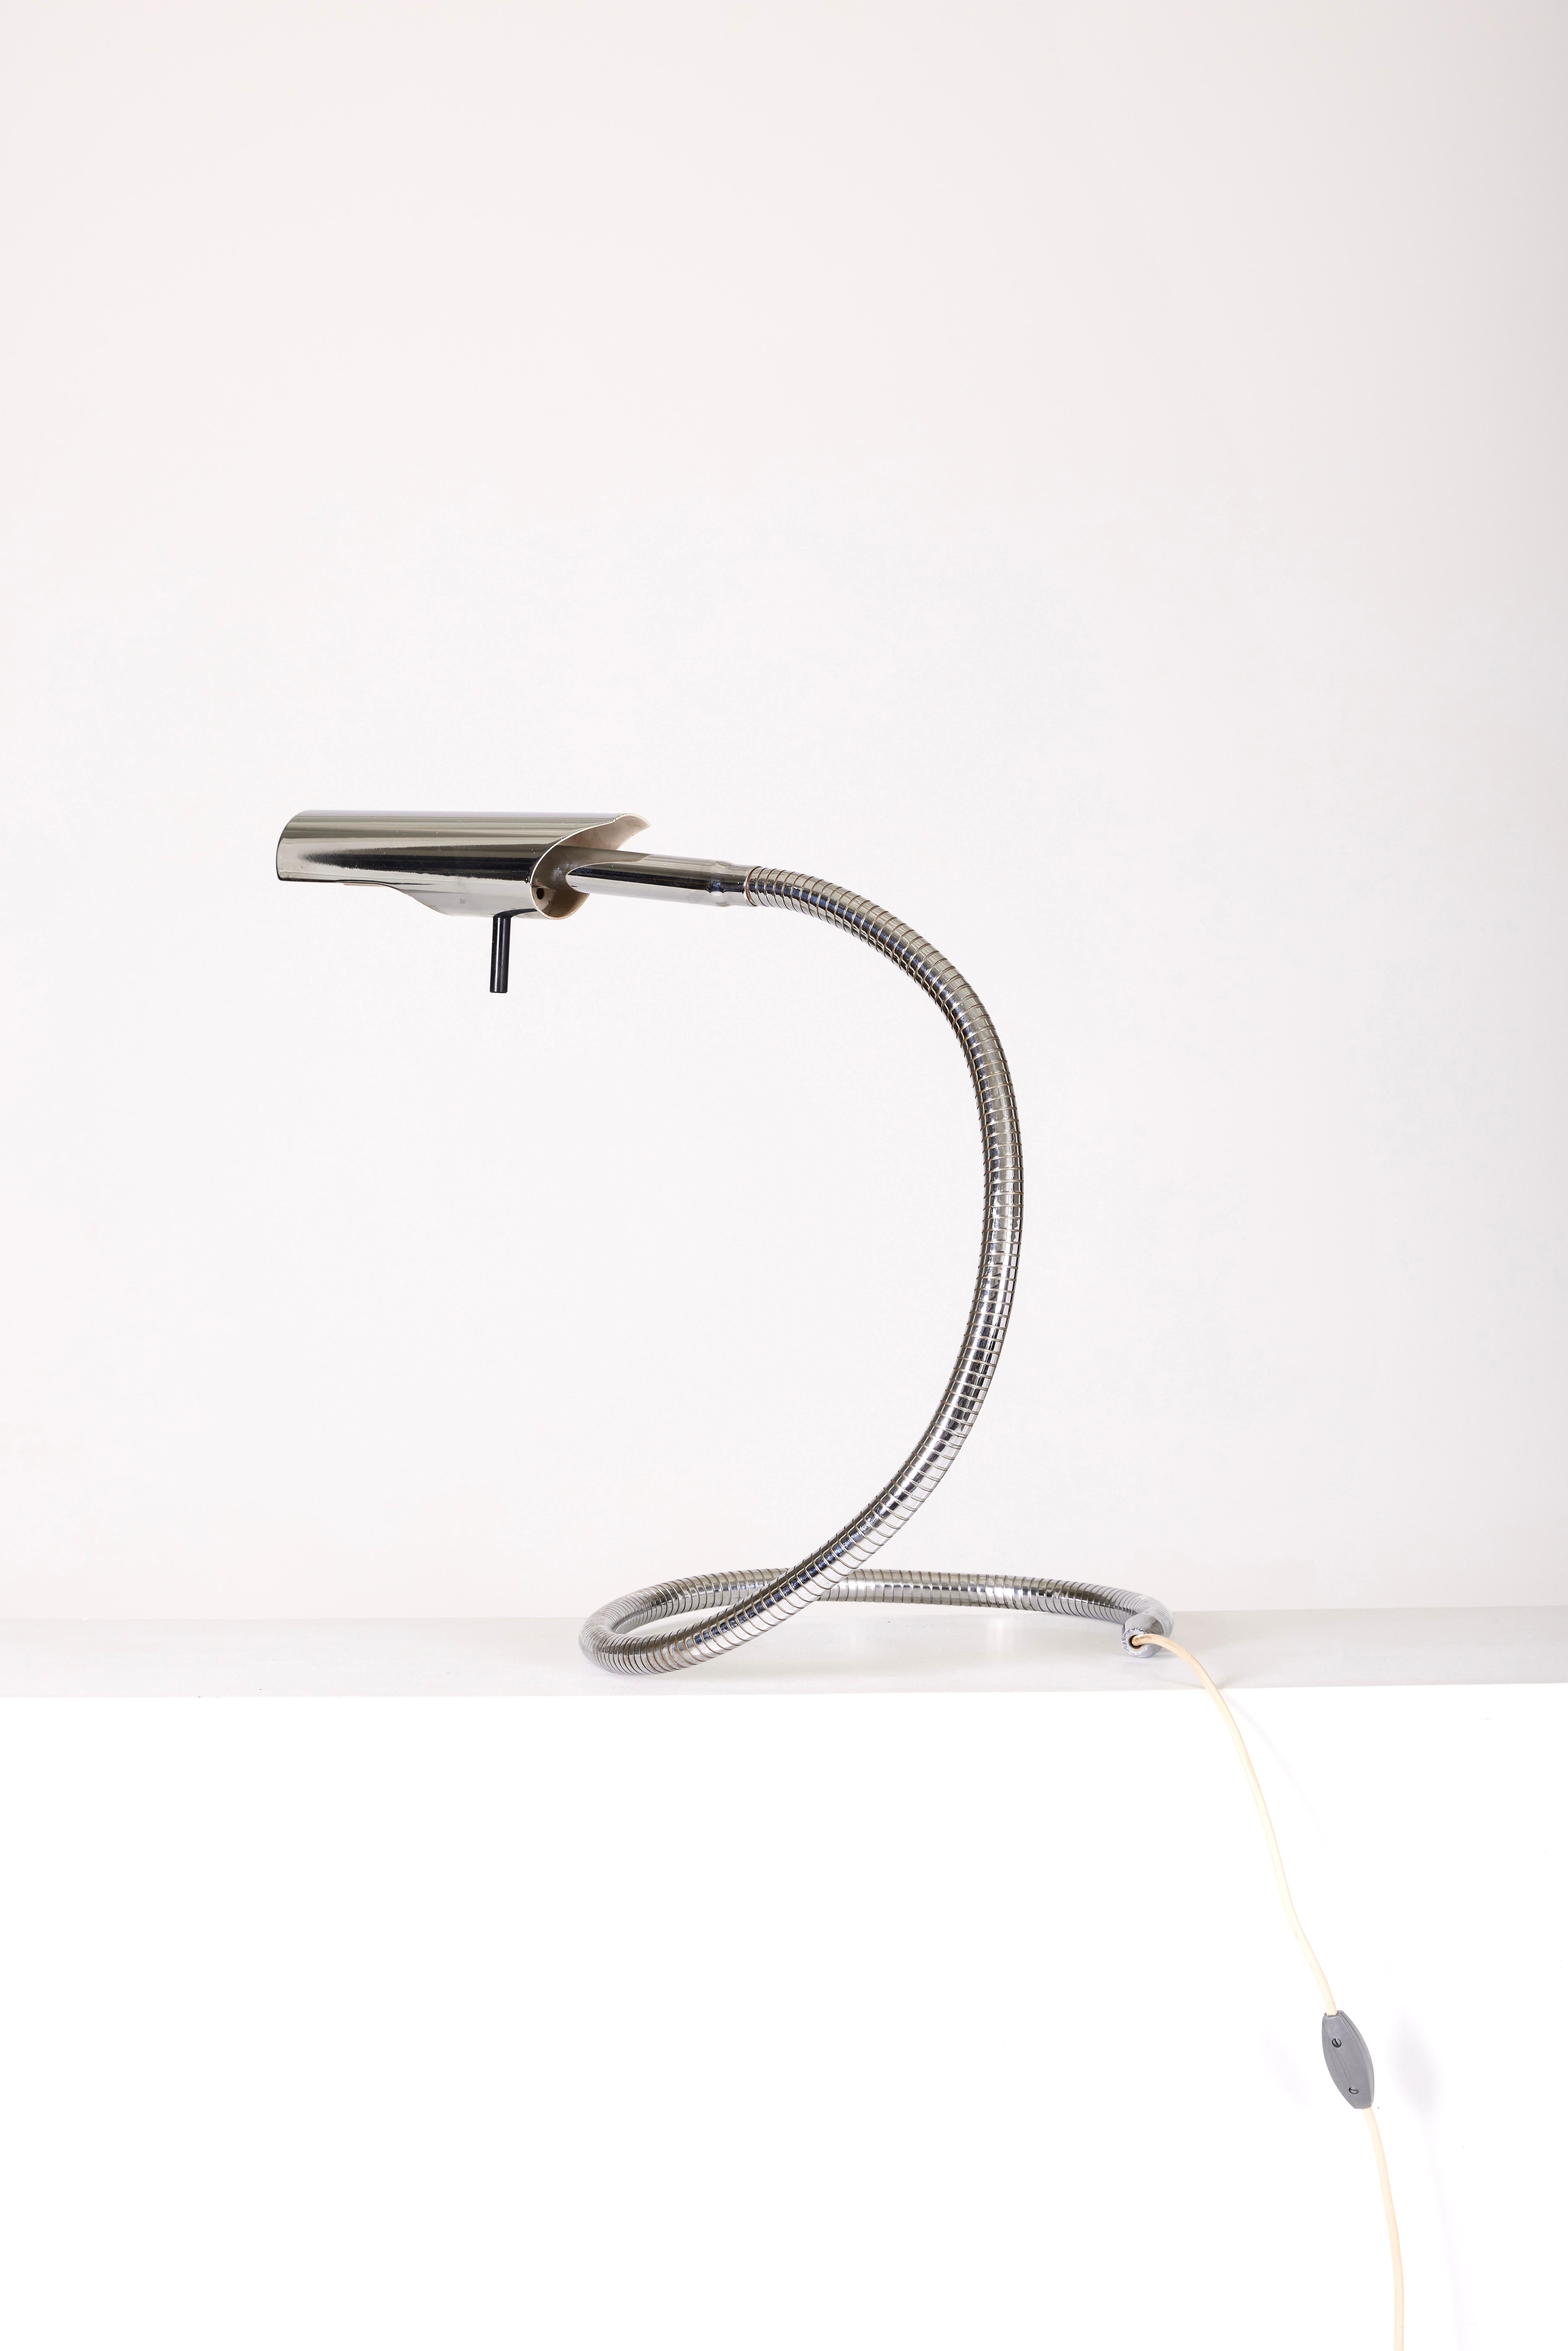 20th Century Etienne Fermigier Aluminum Table Lamp For Sale